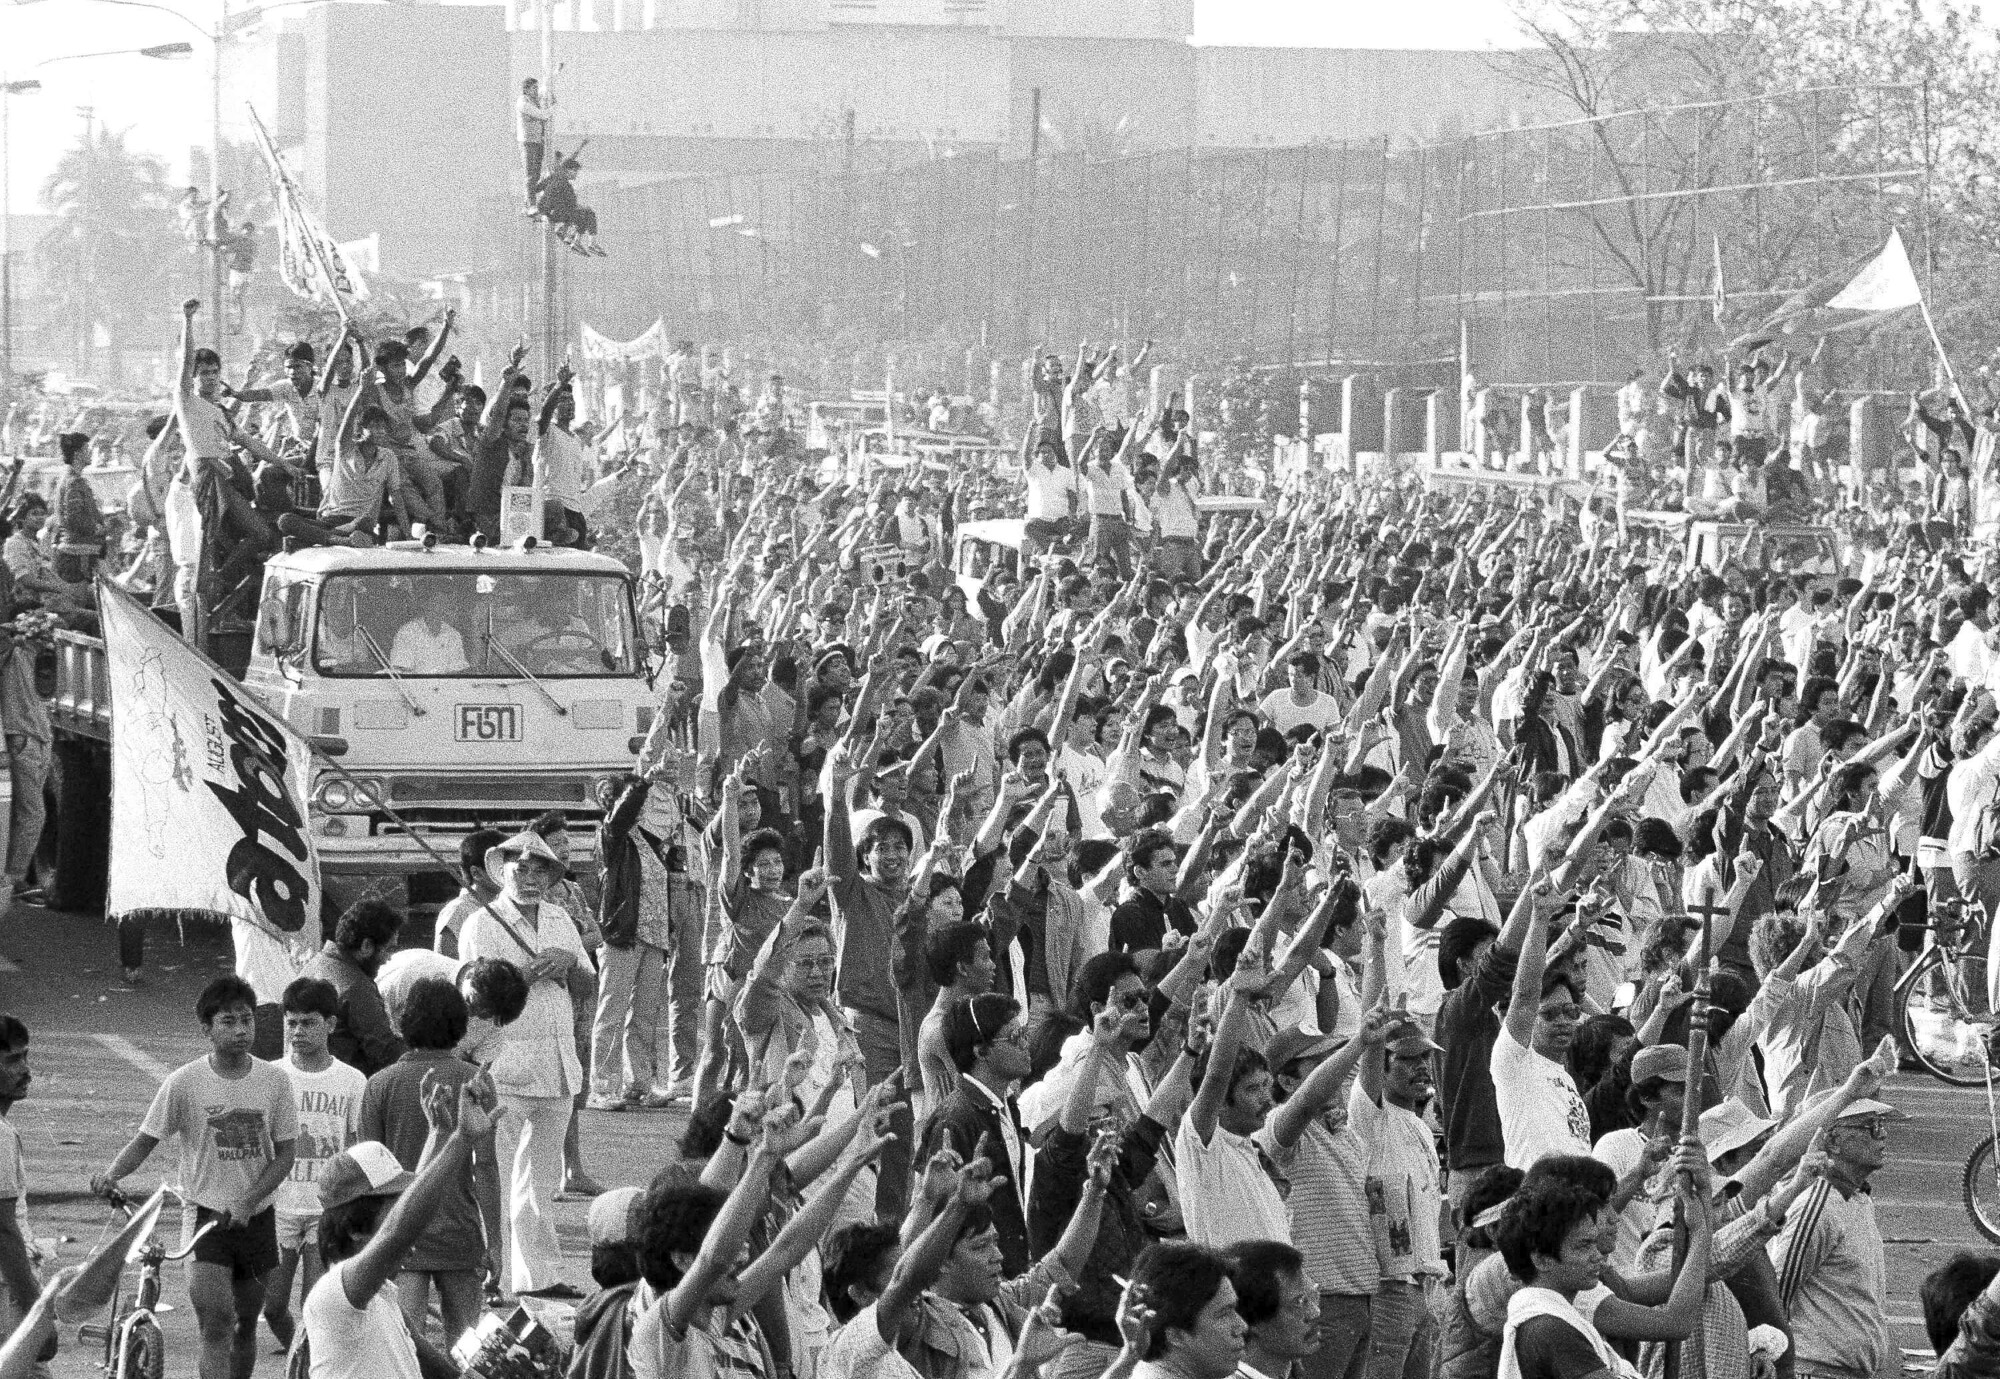 Siyah beyaz bir fotoğrafta, kollarını açmış büyük bir kalabalığın yanında, kollarını kaldırmış insanları taşıyan bir araç görülüyor. 